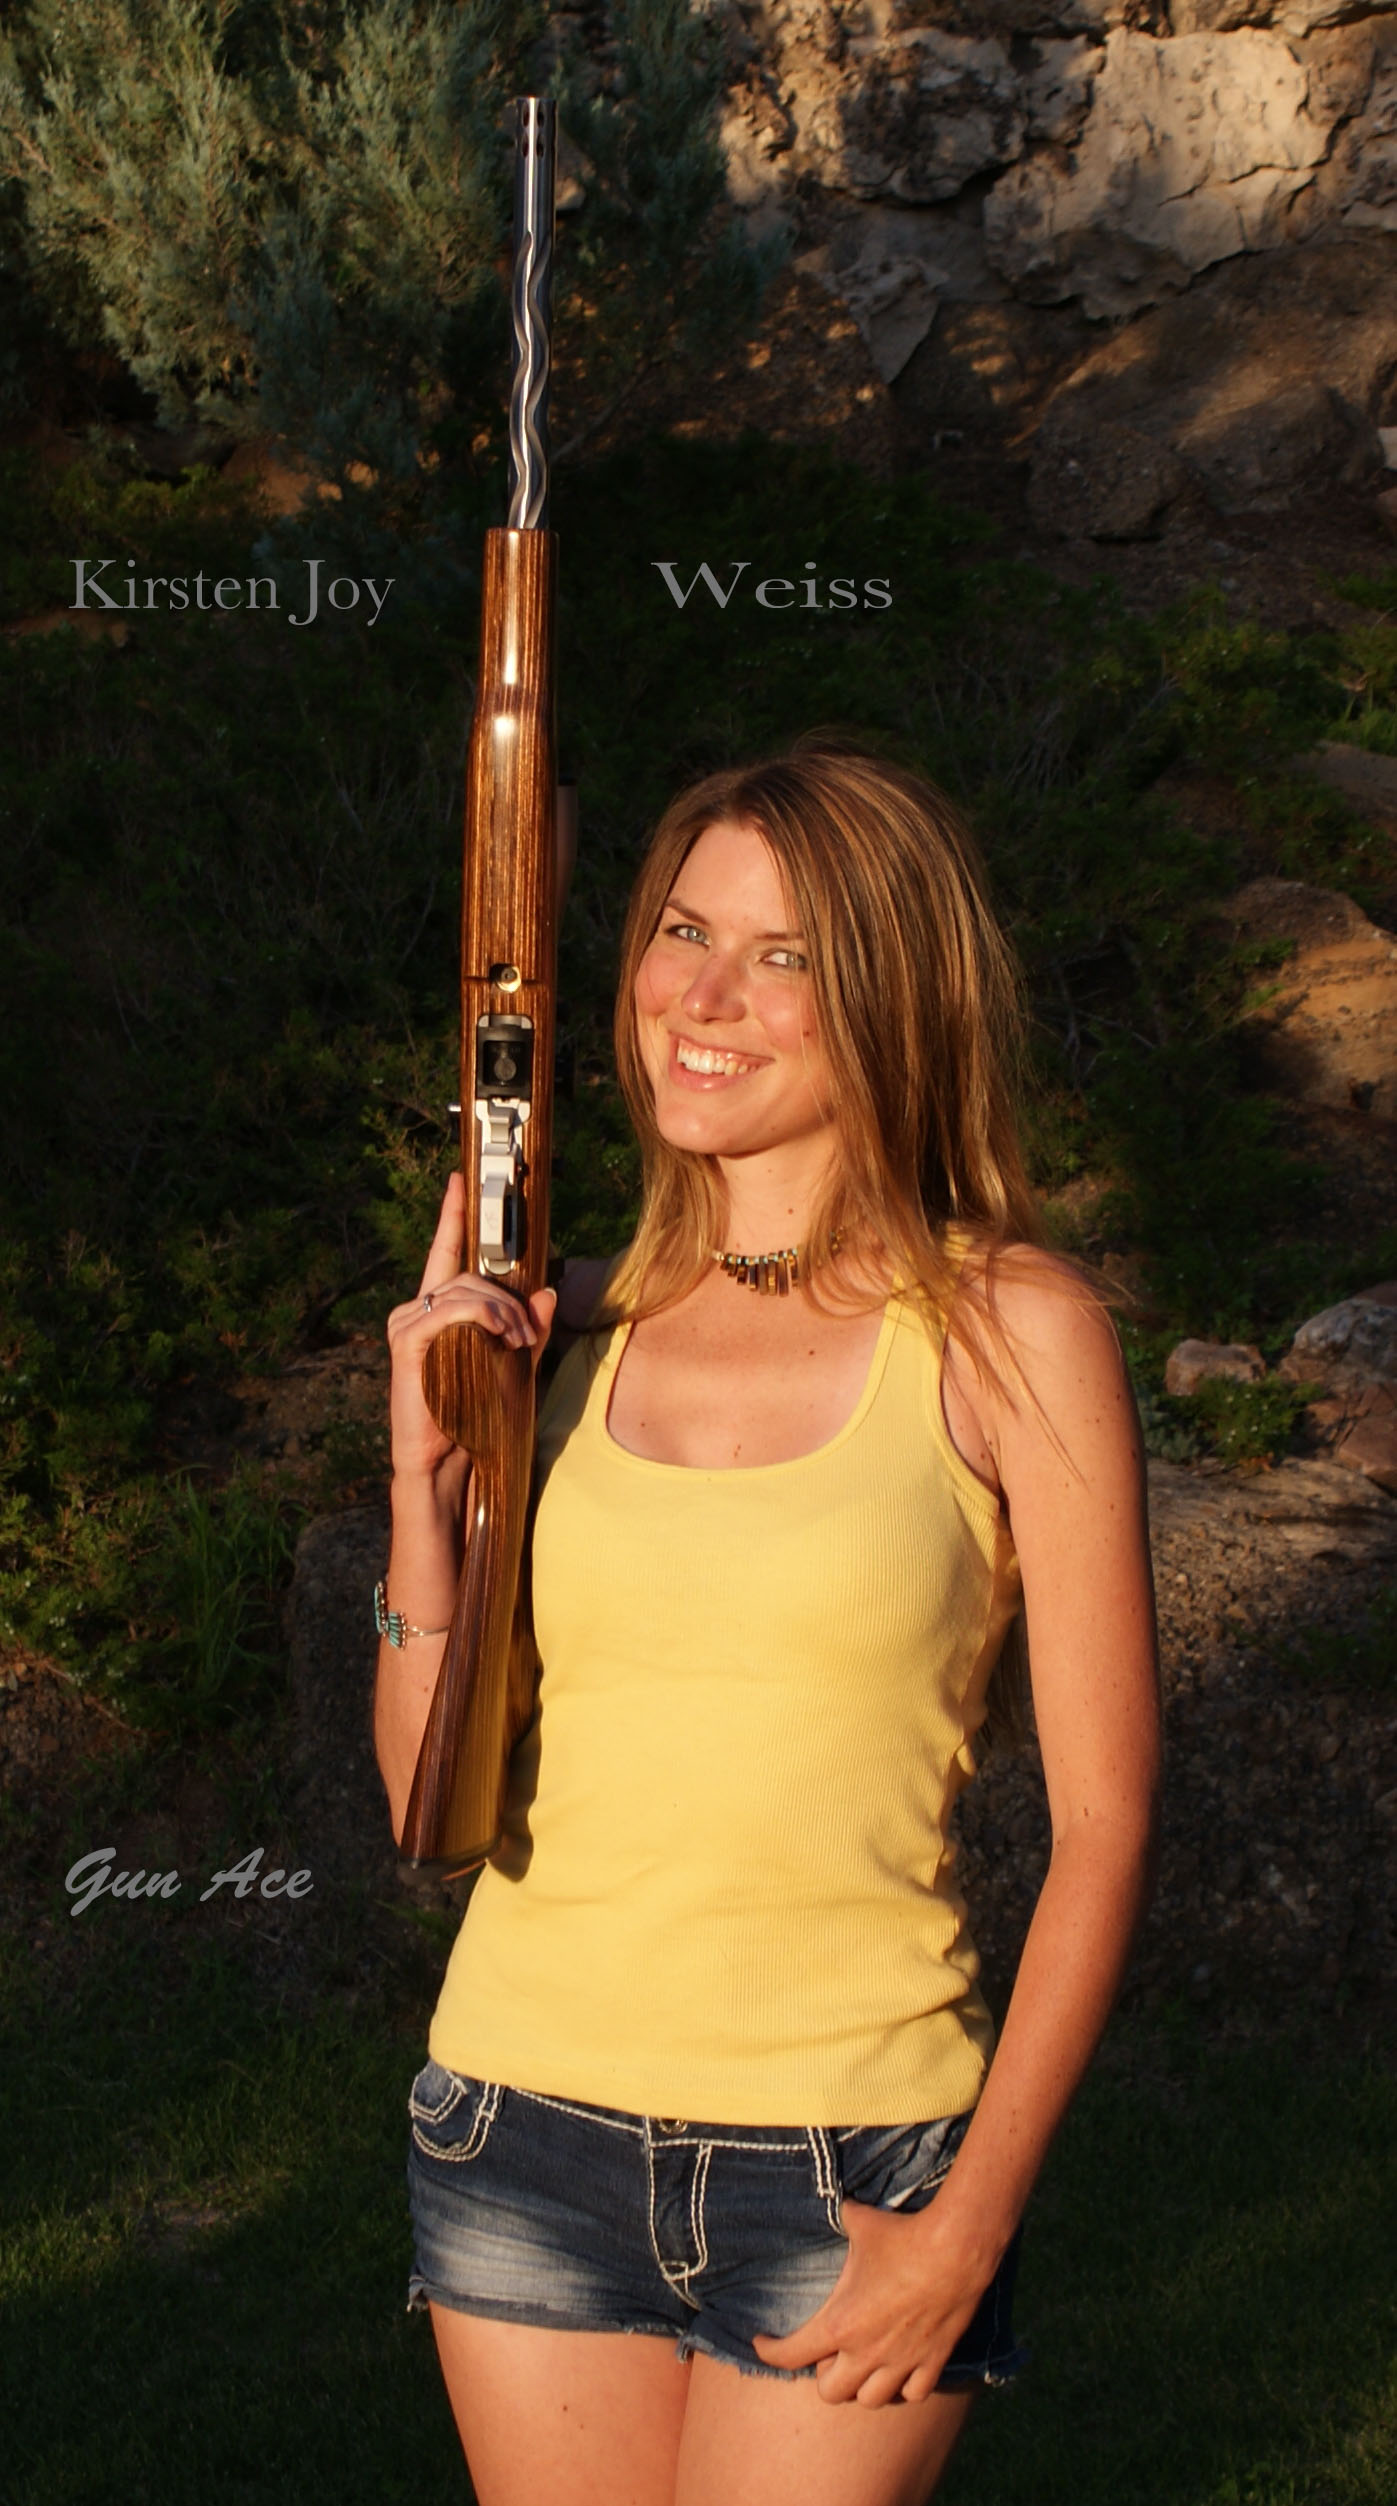 Kirsten Joy Weiss Gun Ace.